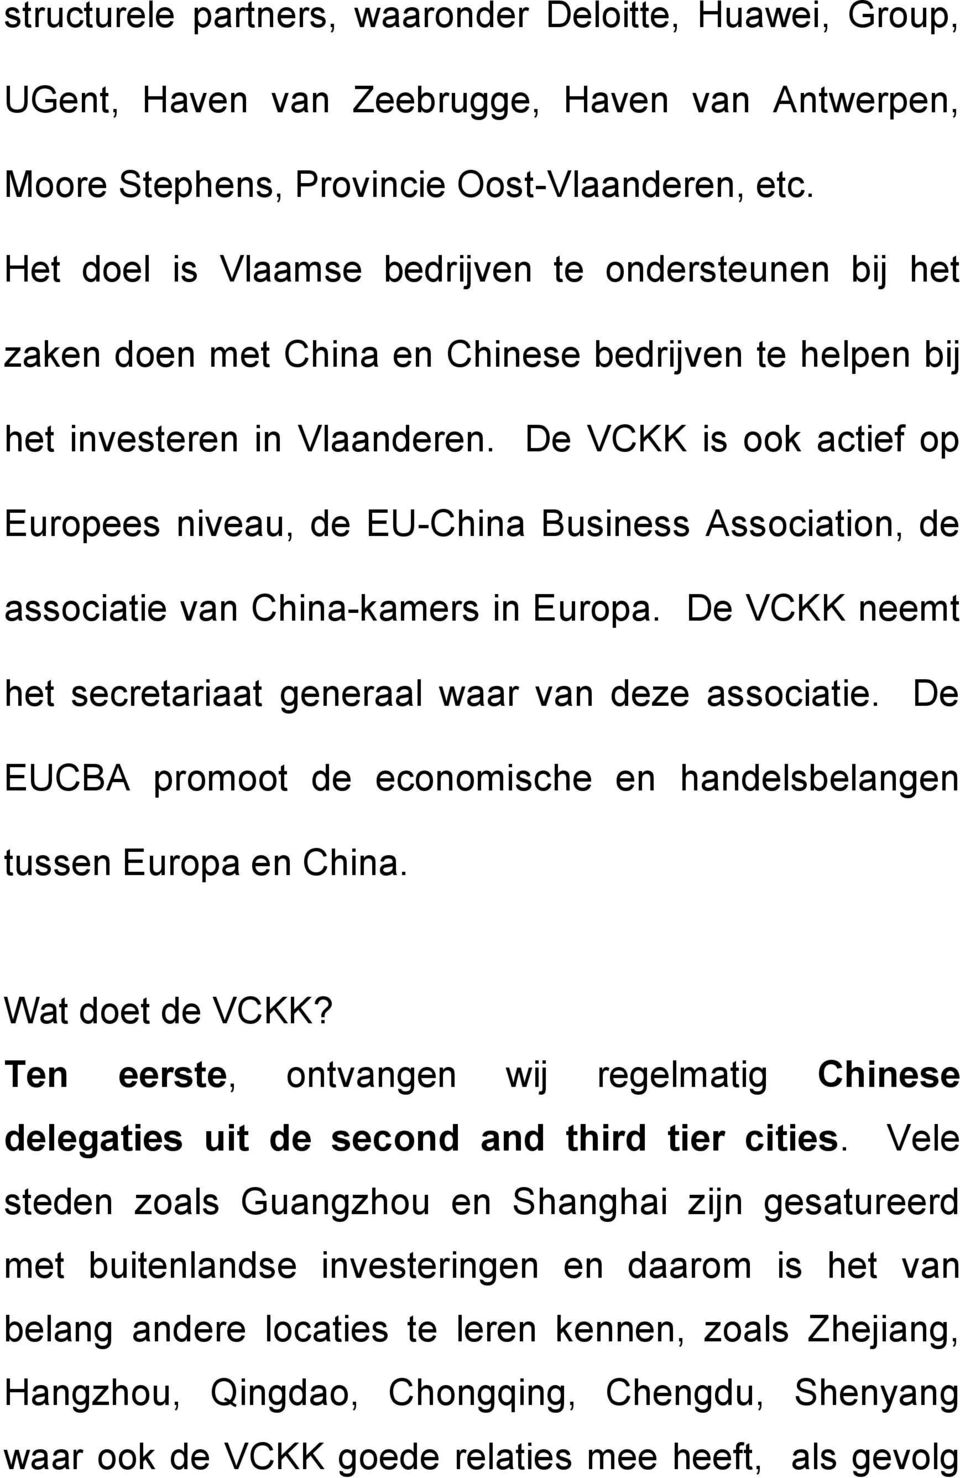 De VCKK is ook actief op Europees niveau, de EU-China Business Association, de associatie van China-kamers in Europa. De VCKK neemt het secretariaat generaal waar van deze associatie.